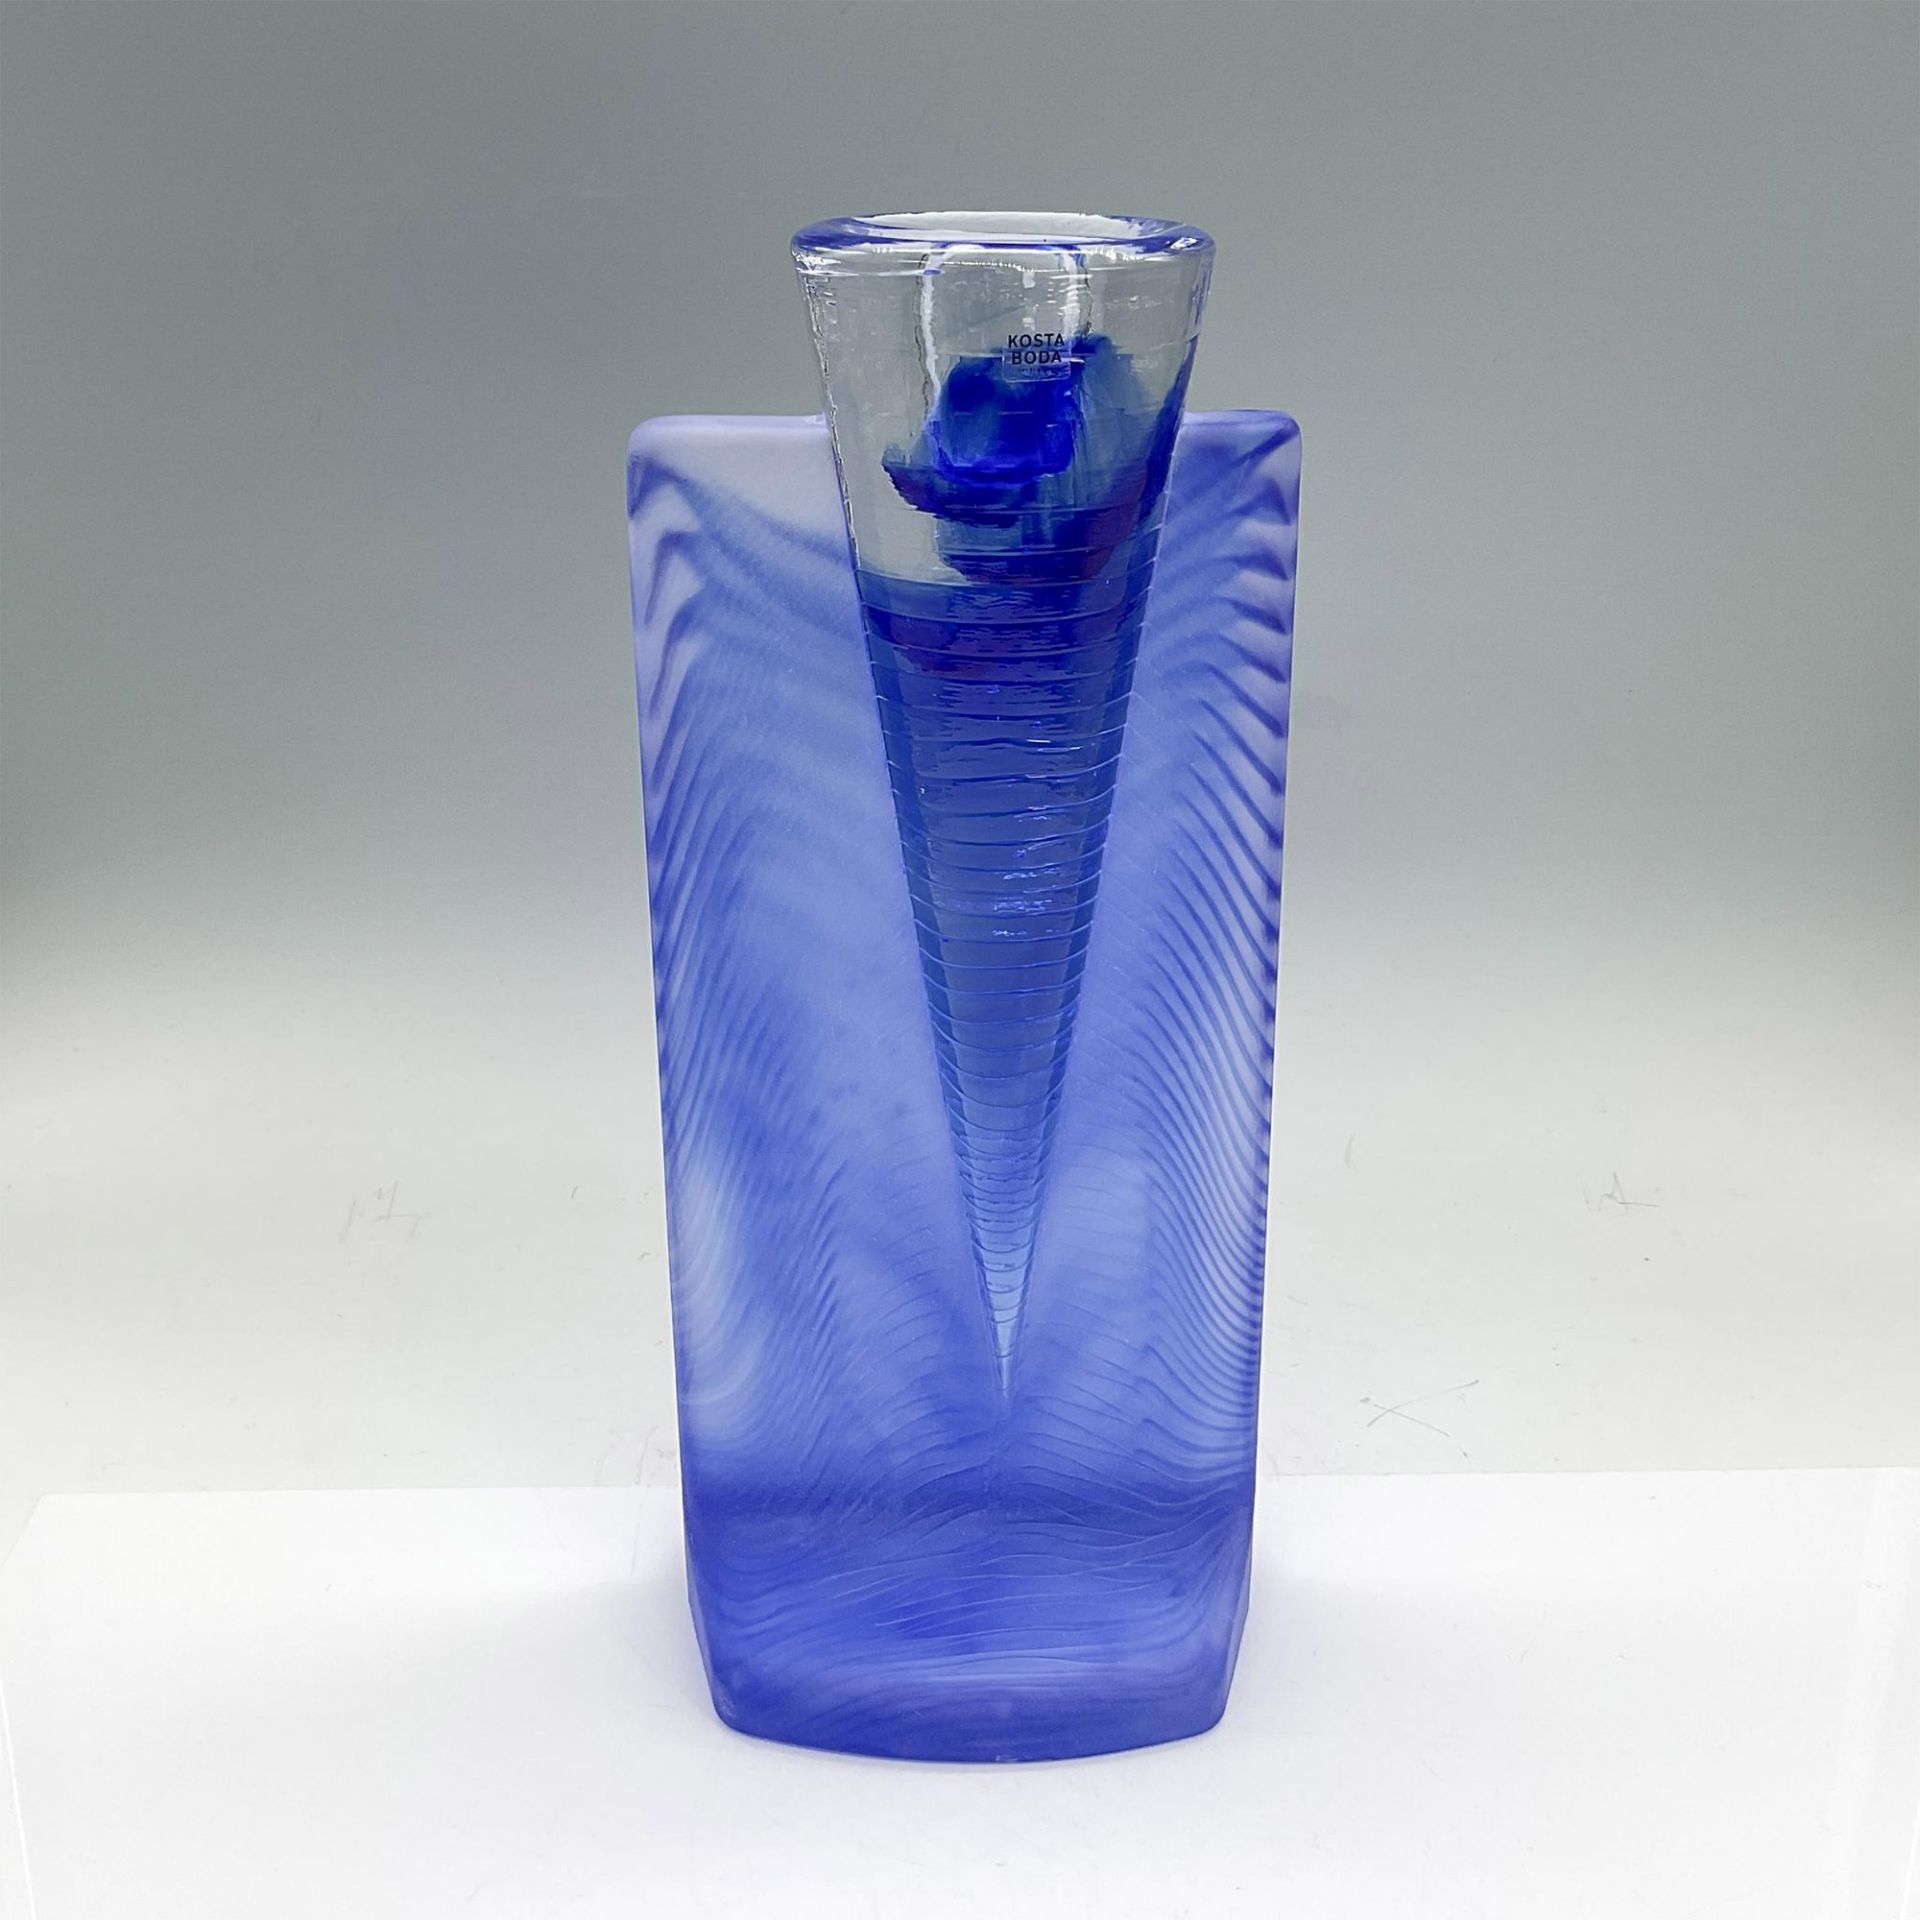 Kosta Boda Glass Candleholder, Ice Age Blue - Image 2 of 3